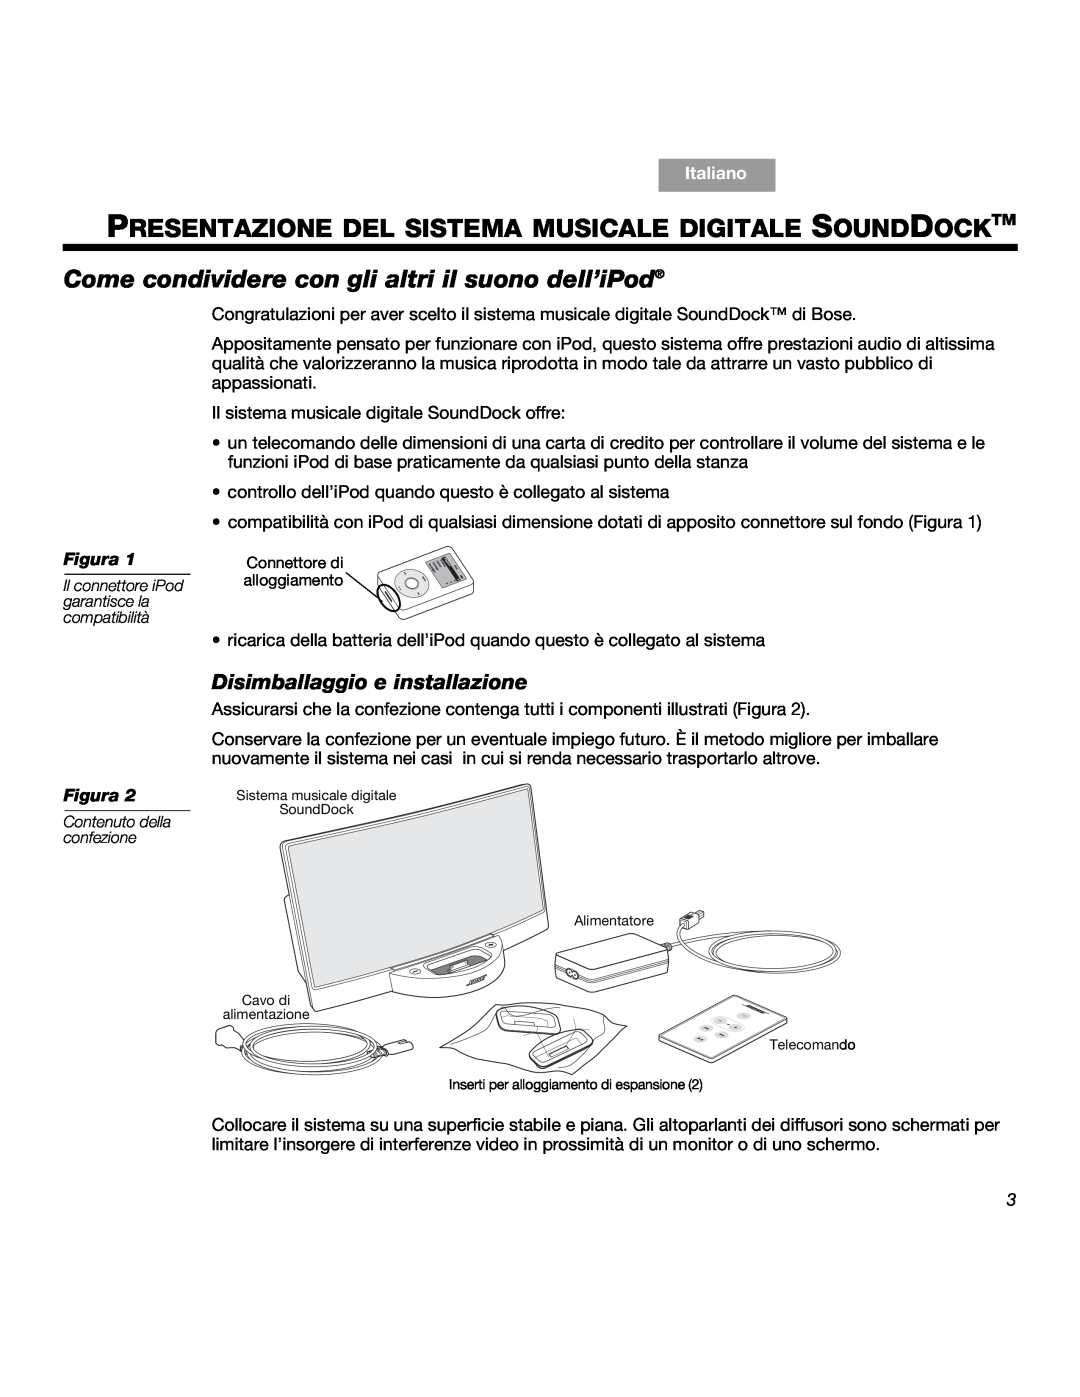 Bose SOUNDDOCKTM manual Come condividere con gli altri il suono dell’iPod, Disimballaggio e installazione, Italiano, Figura 